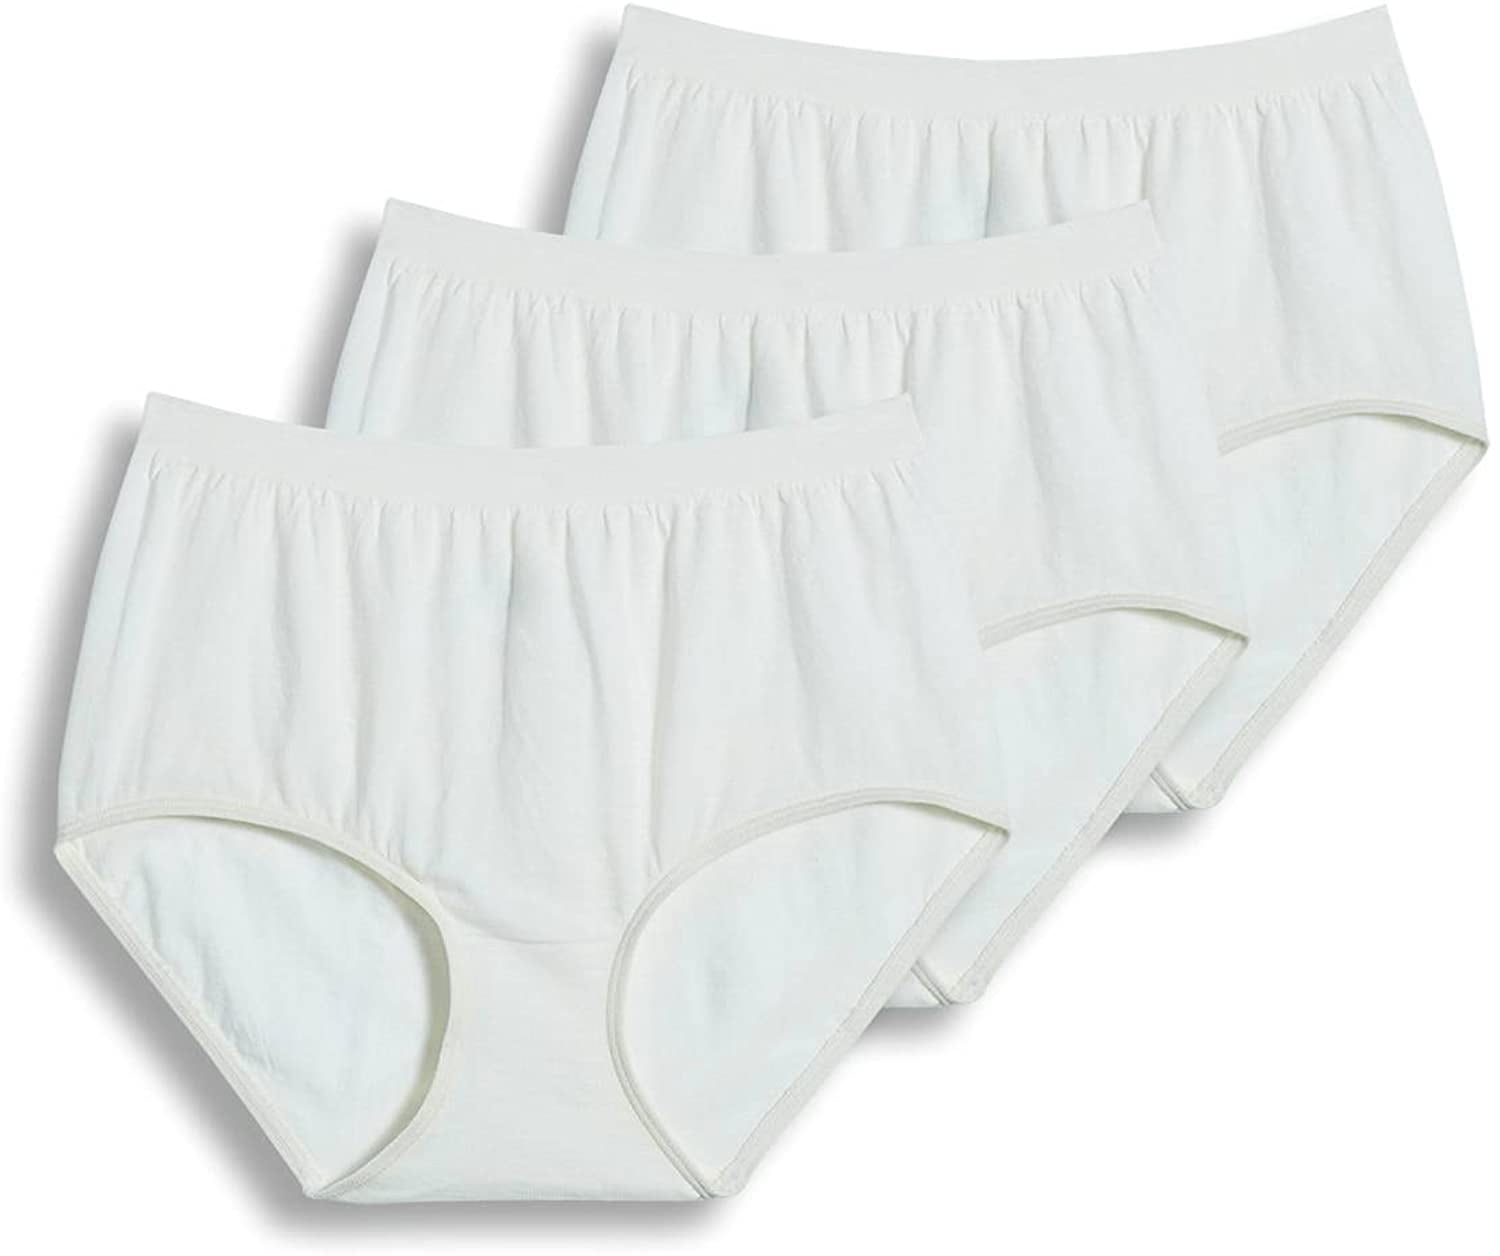 Jockey Women's Underwear Comfies Cotton Brief - 3 Pack, ivory, 8 ...